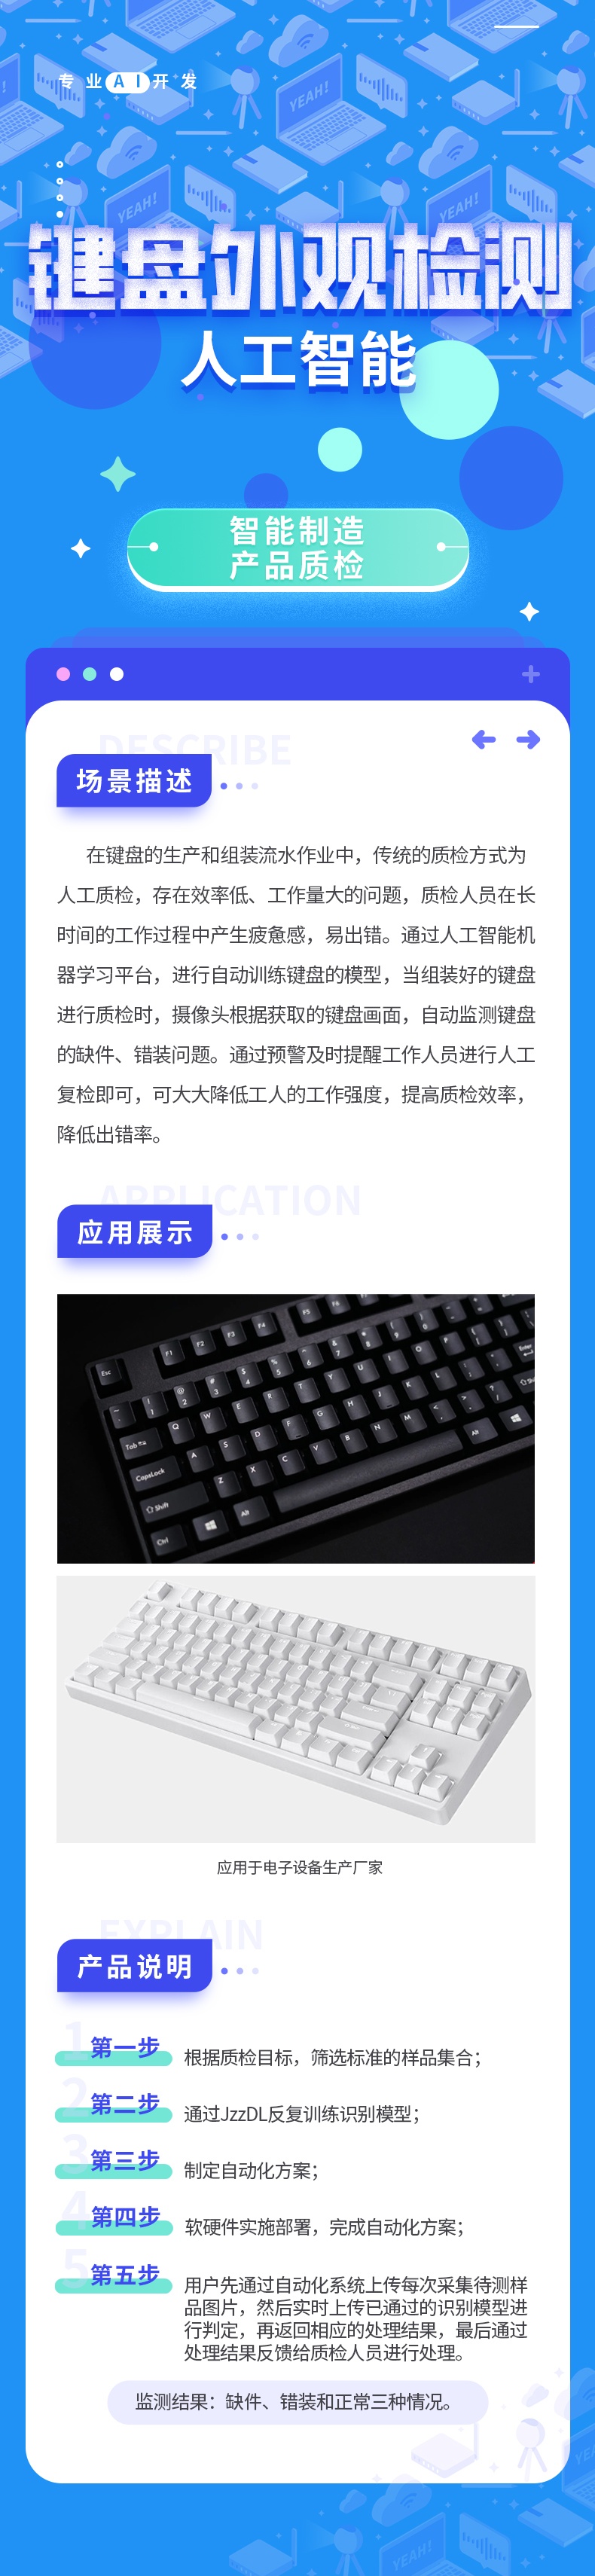 1键盘外观检测1_看图王.jpg